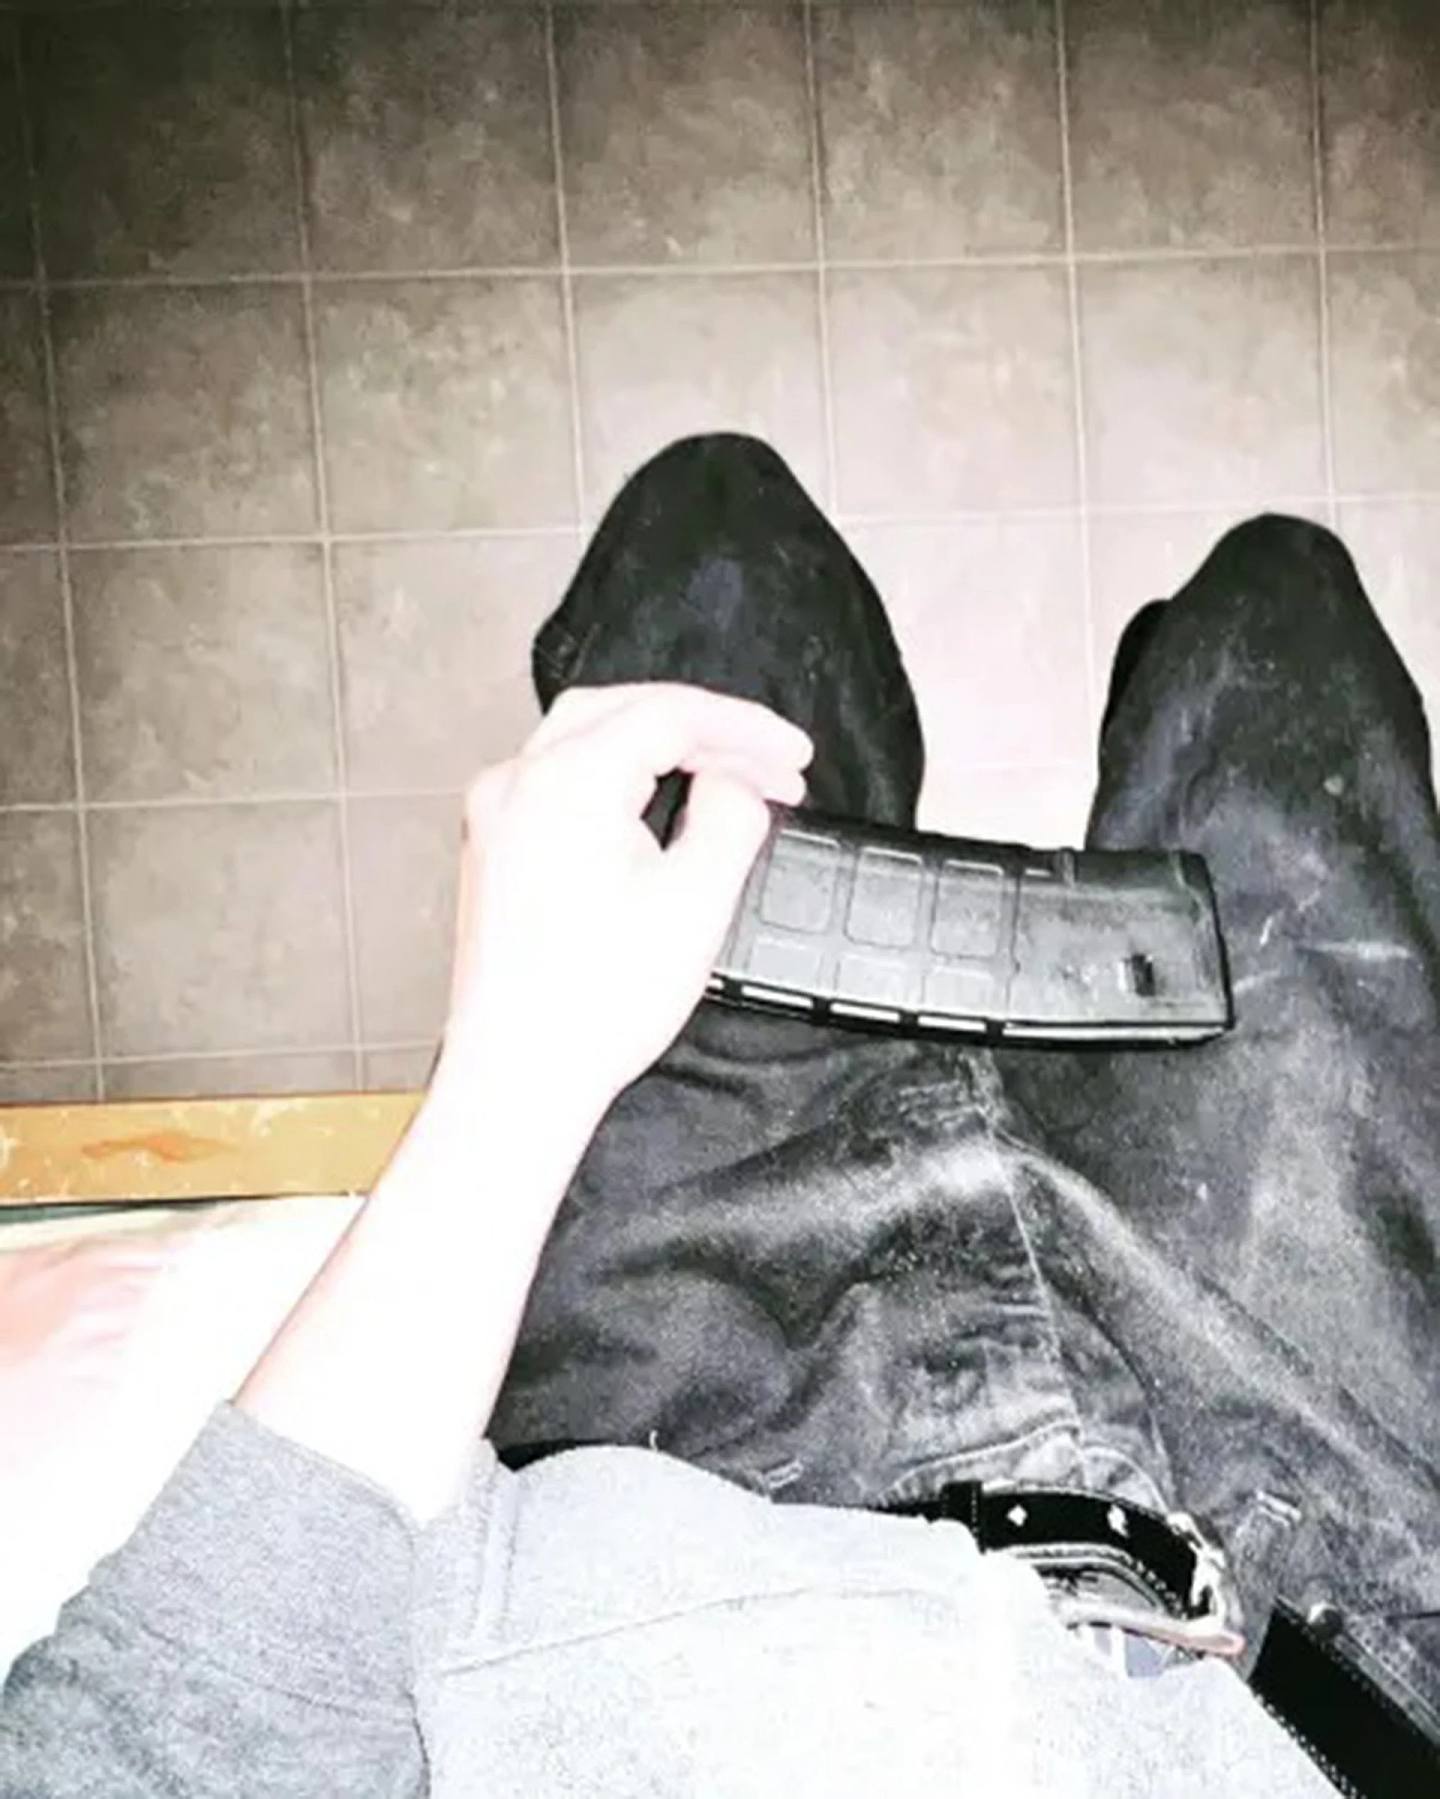 疑似拉莫斯早前曾上载弹匣的照片，外界怀质是他的犯案预告。 (salv8dor_/Instagram)